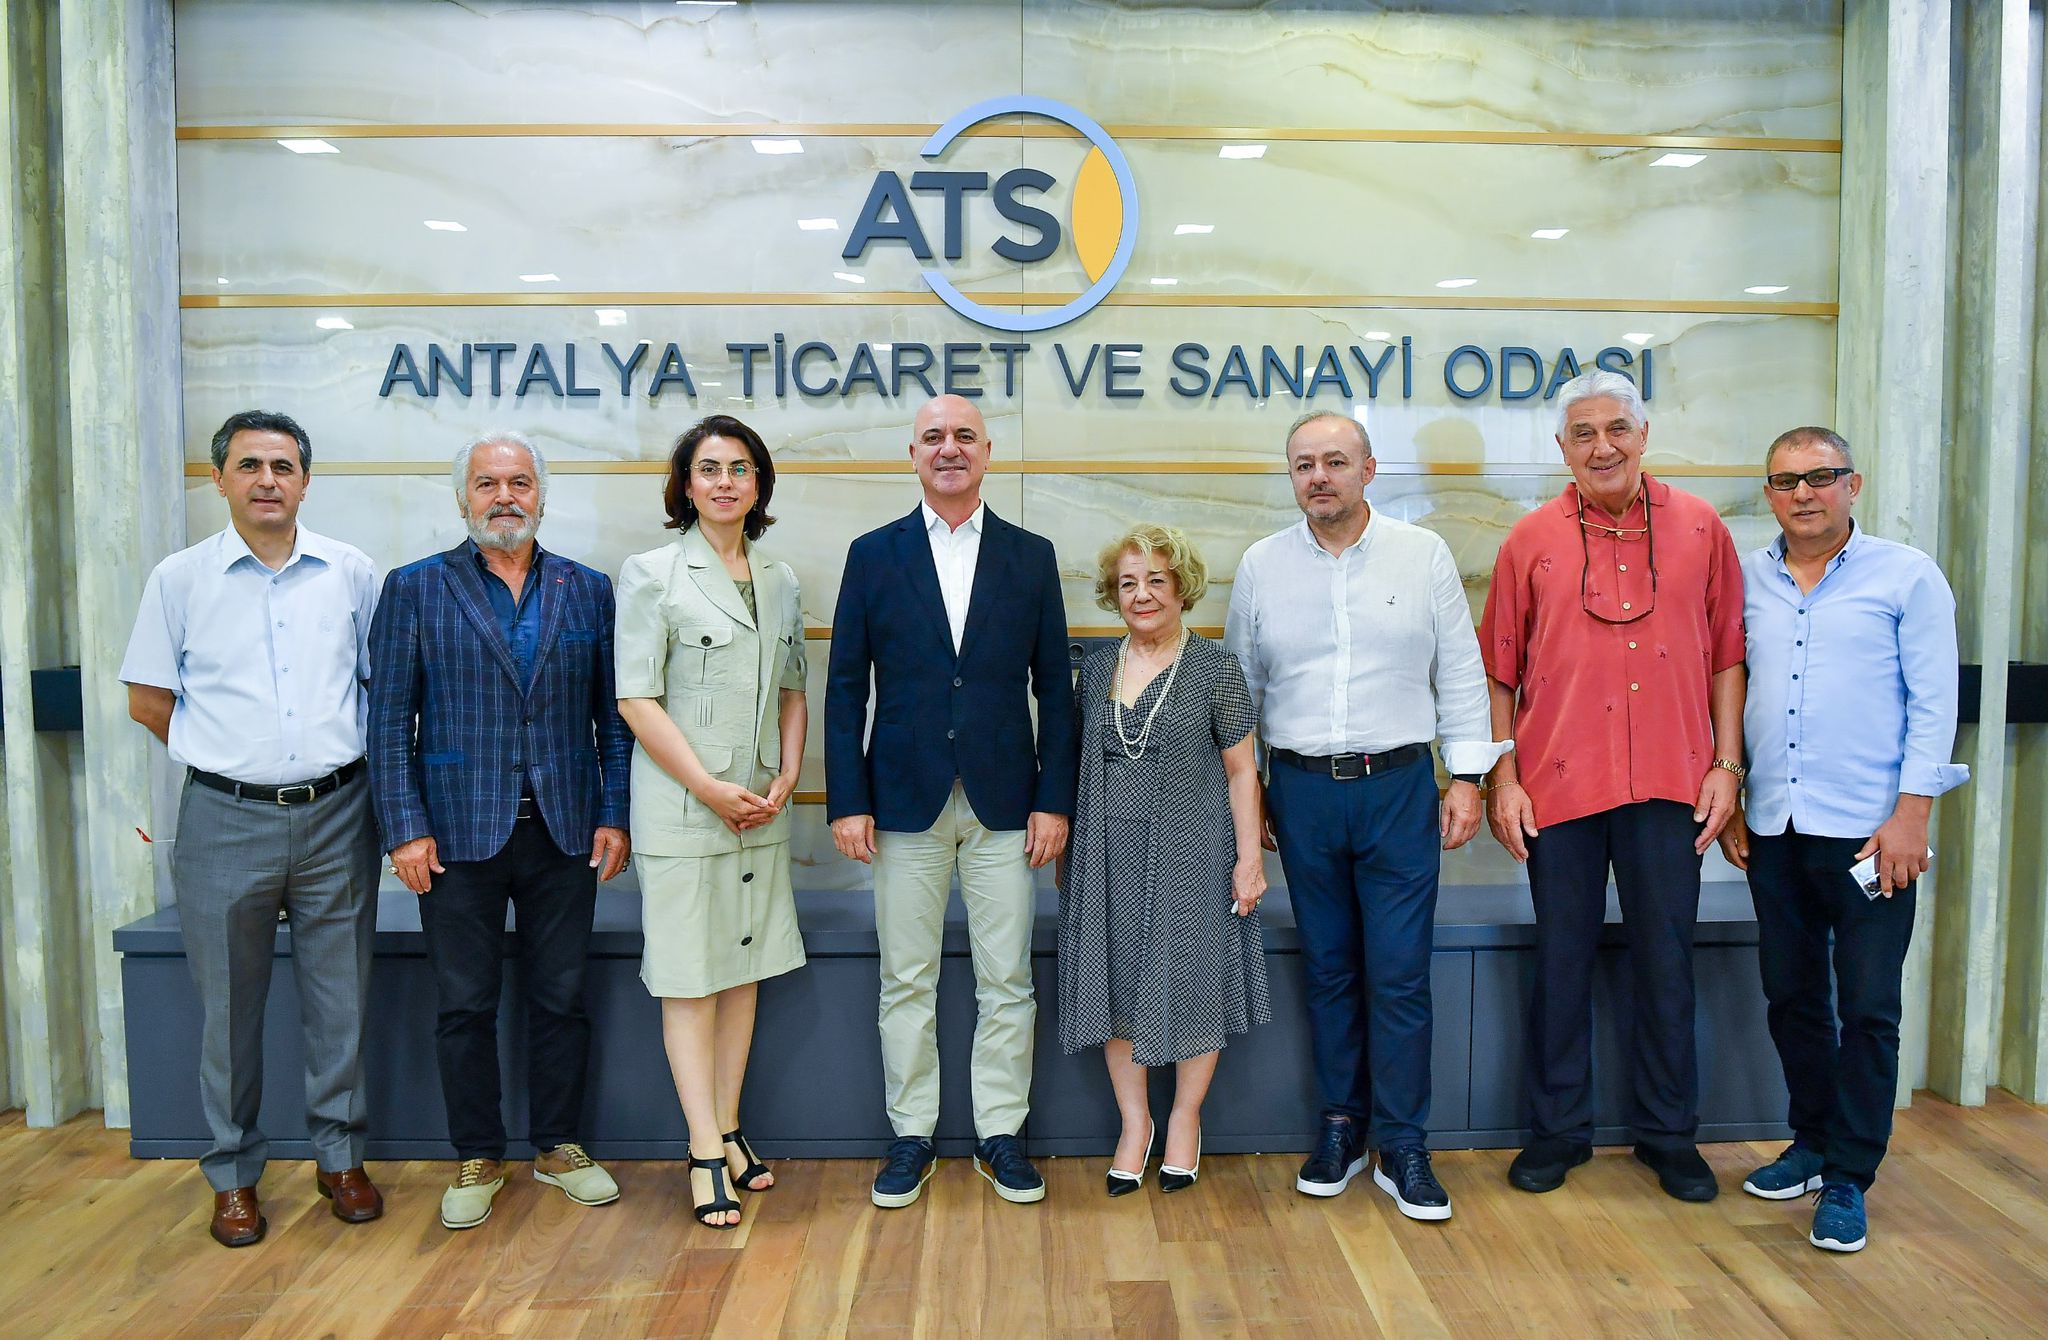 Antalya için Teamder ve atso işbirliği